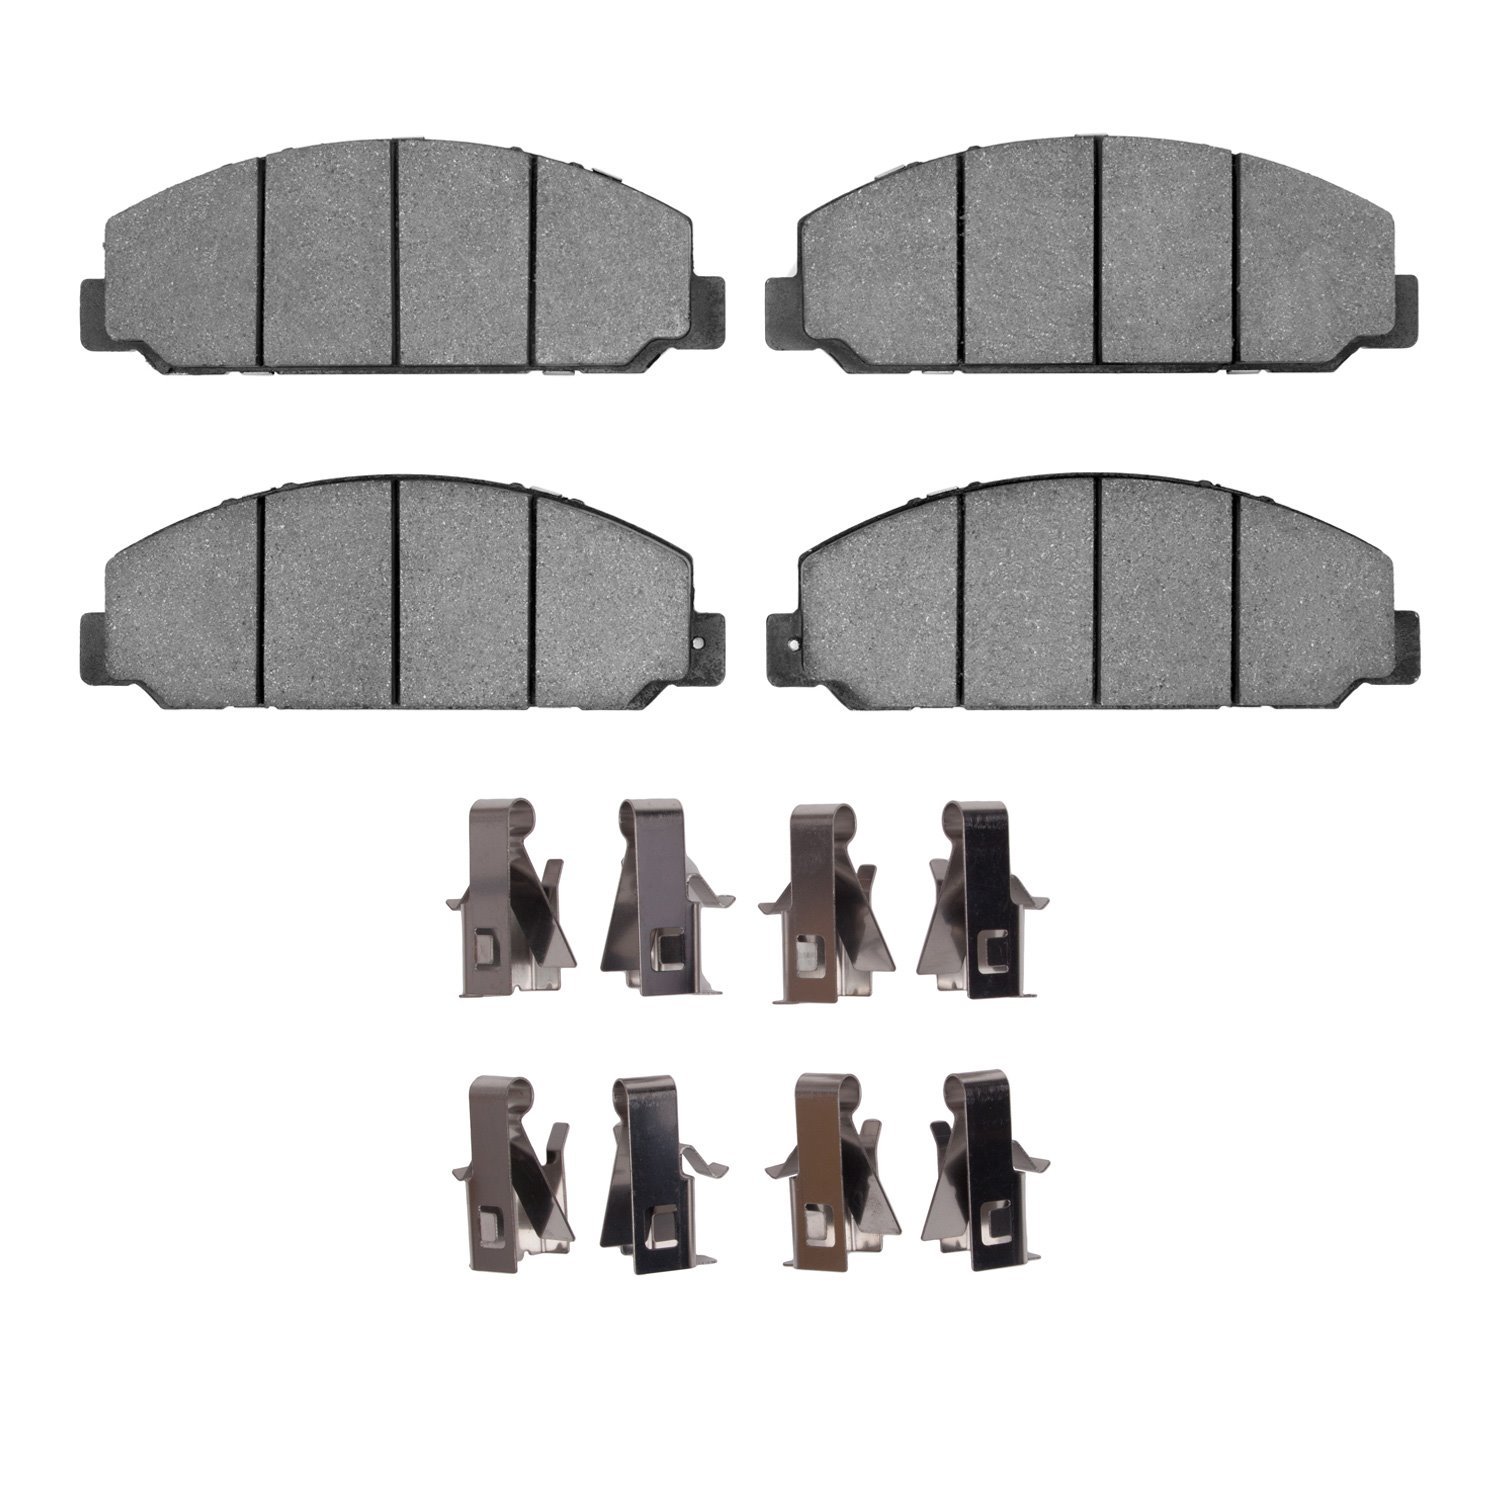 1310-1683-01 3000-Series Ceramic Brake Pads & Hardware Kit, 2013-2020 Hino, Position: Fr,Rr